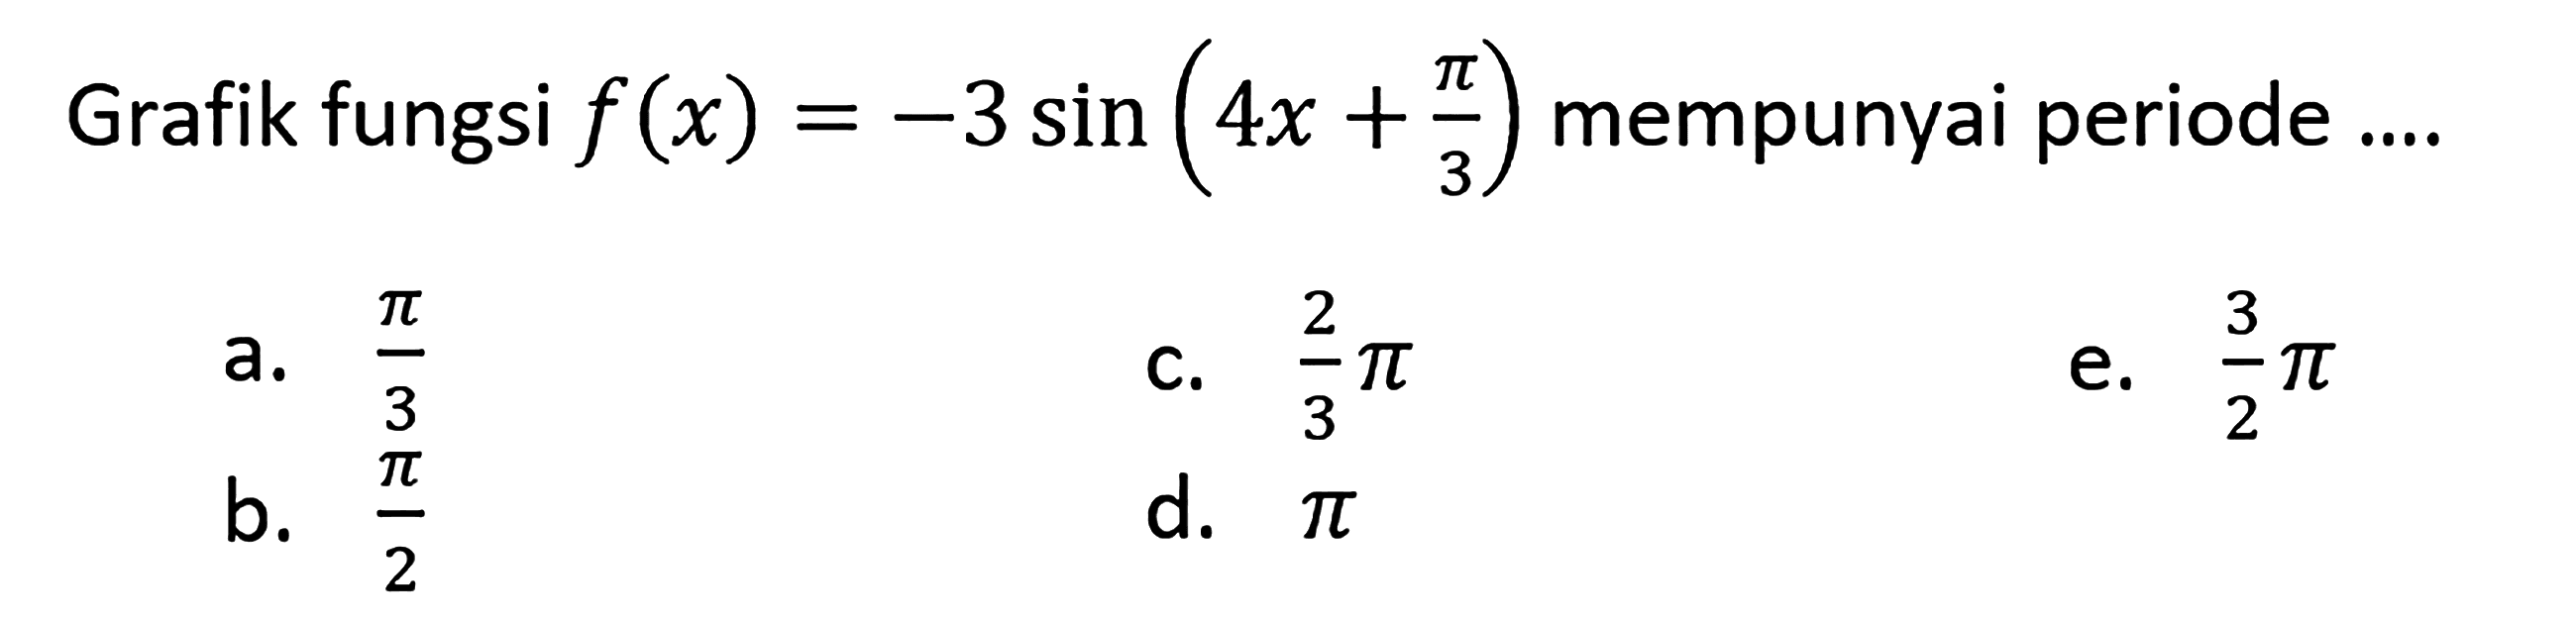 Grafik fungsi f(x) = -3 sin(4x+pi/3) mempunyai periode ....